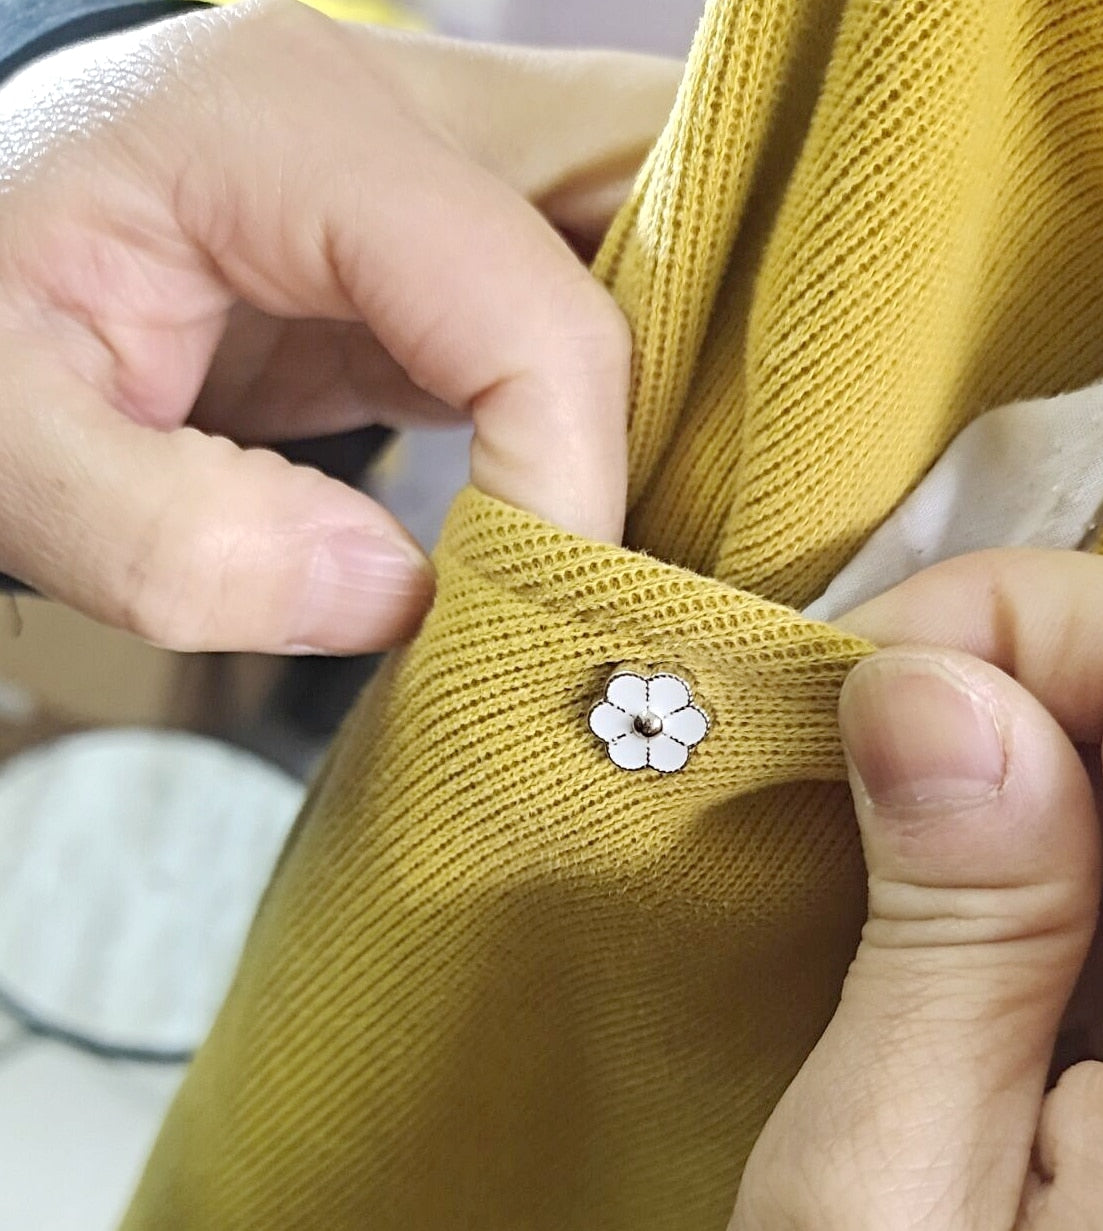 New 30PCS Women Shirt Brooch Buttons No Sew Safety